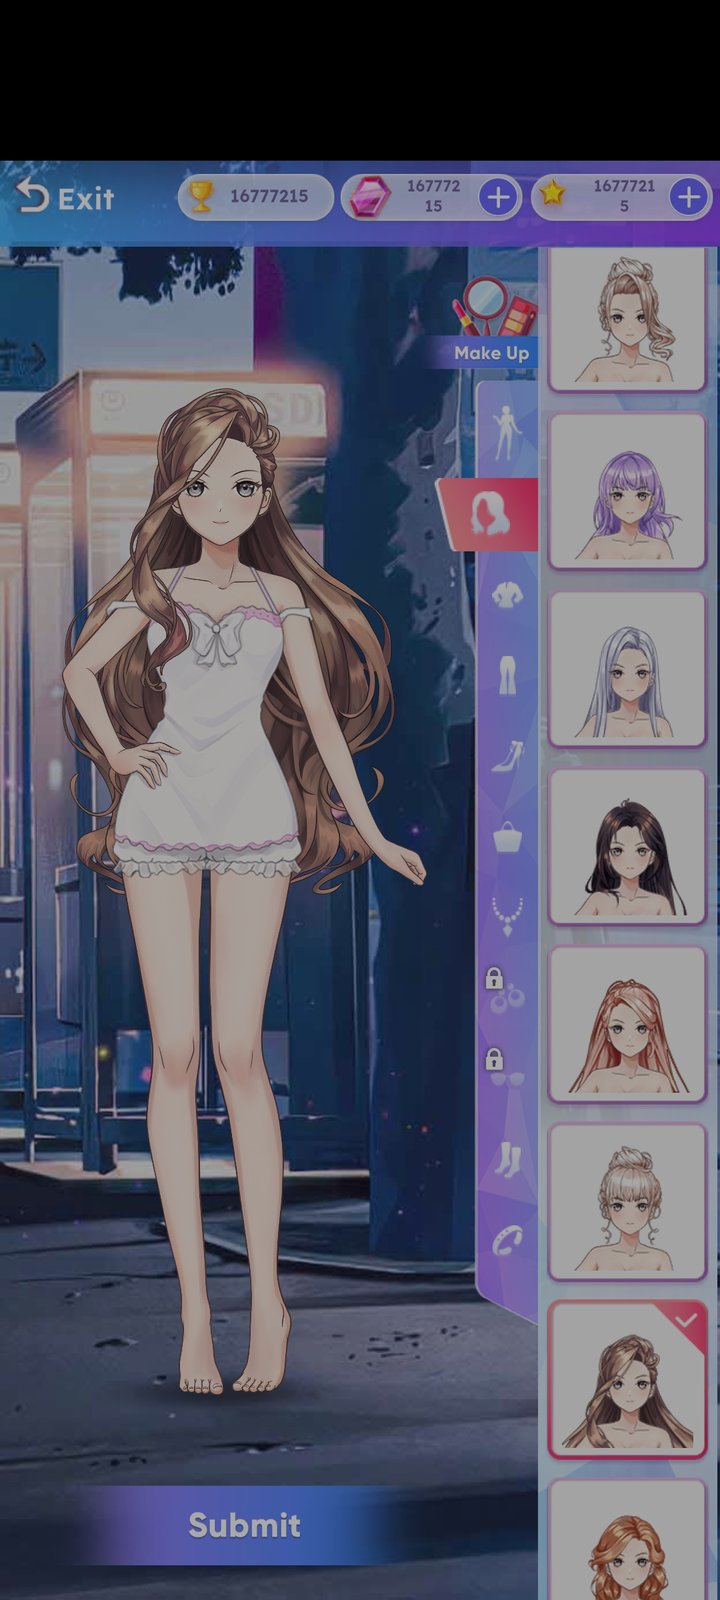 Anime Princess 2：Dress Up Game v2.3 MOD APK (Unlimited Money) Download